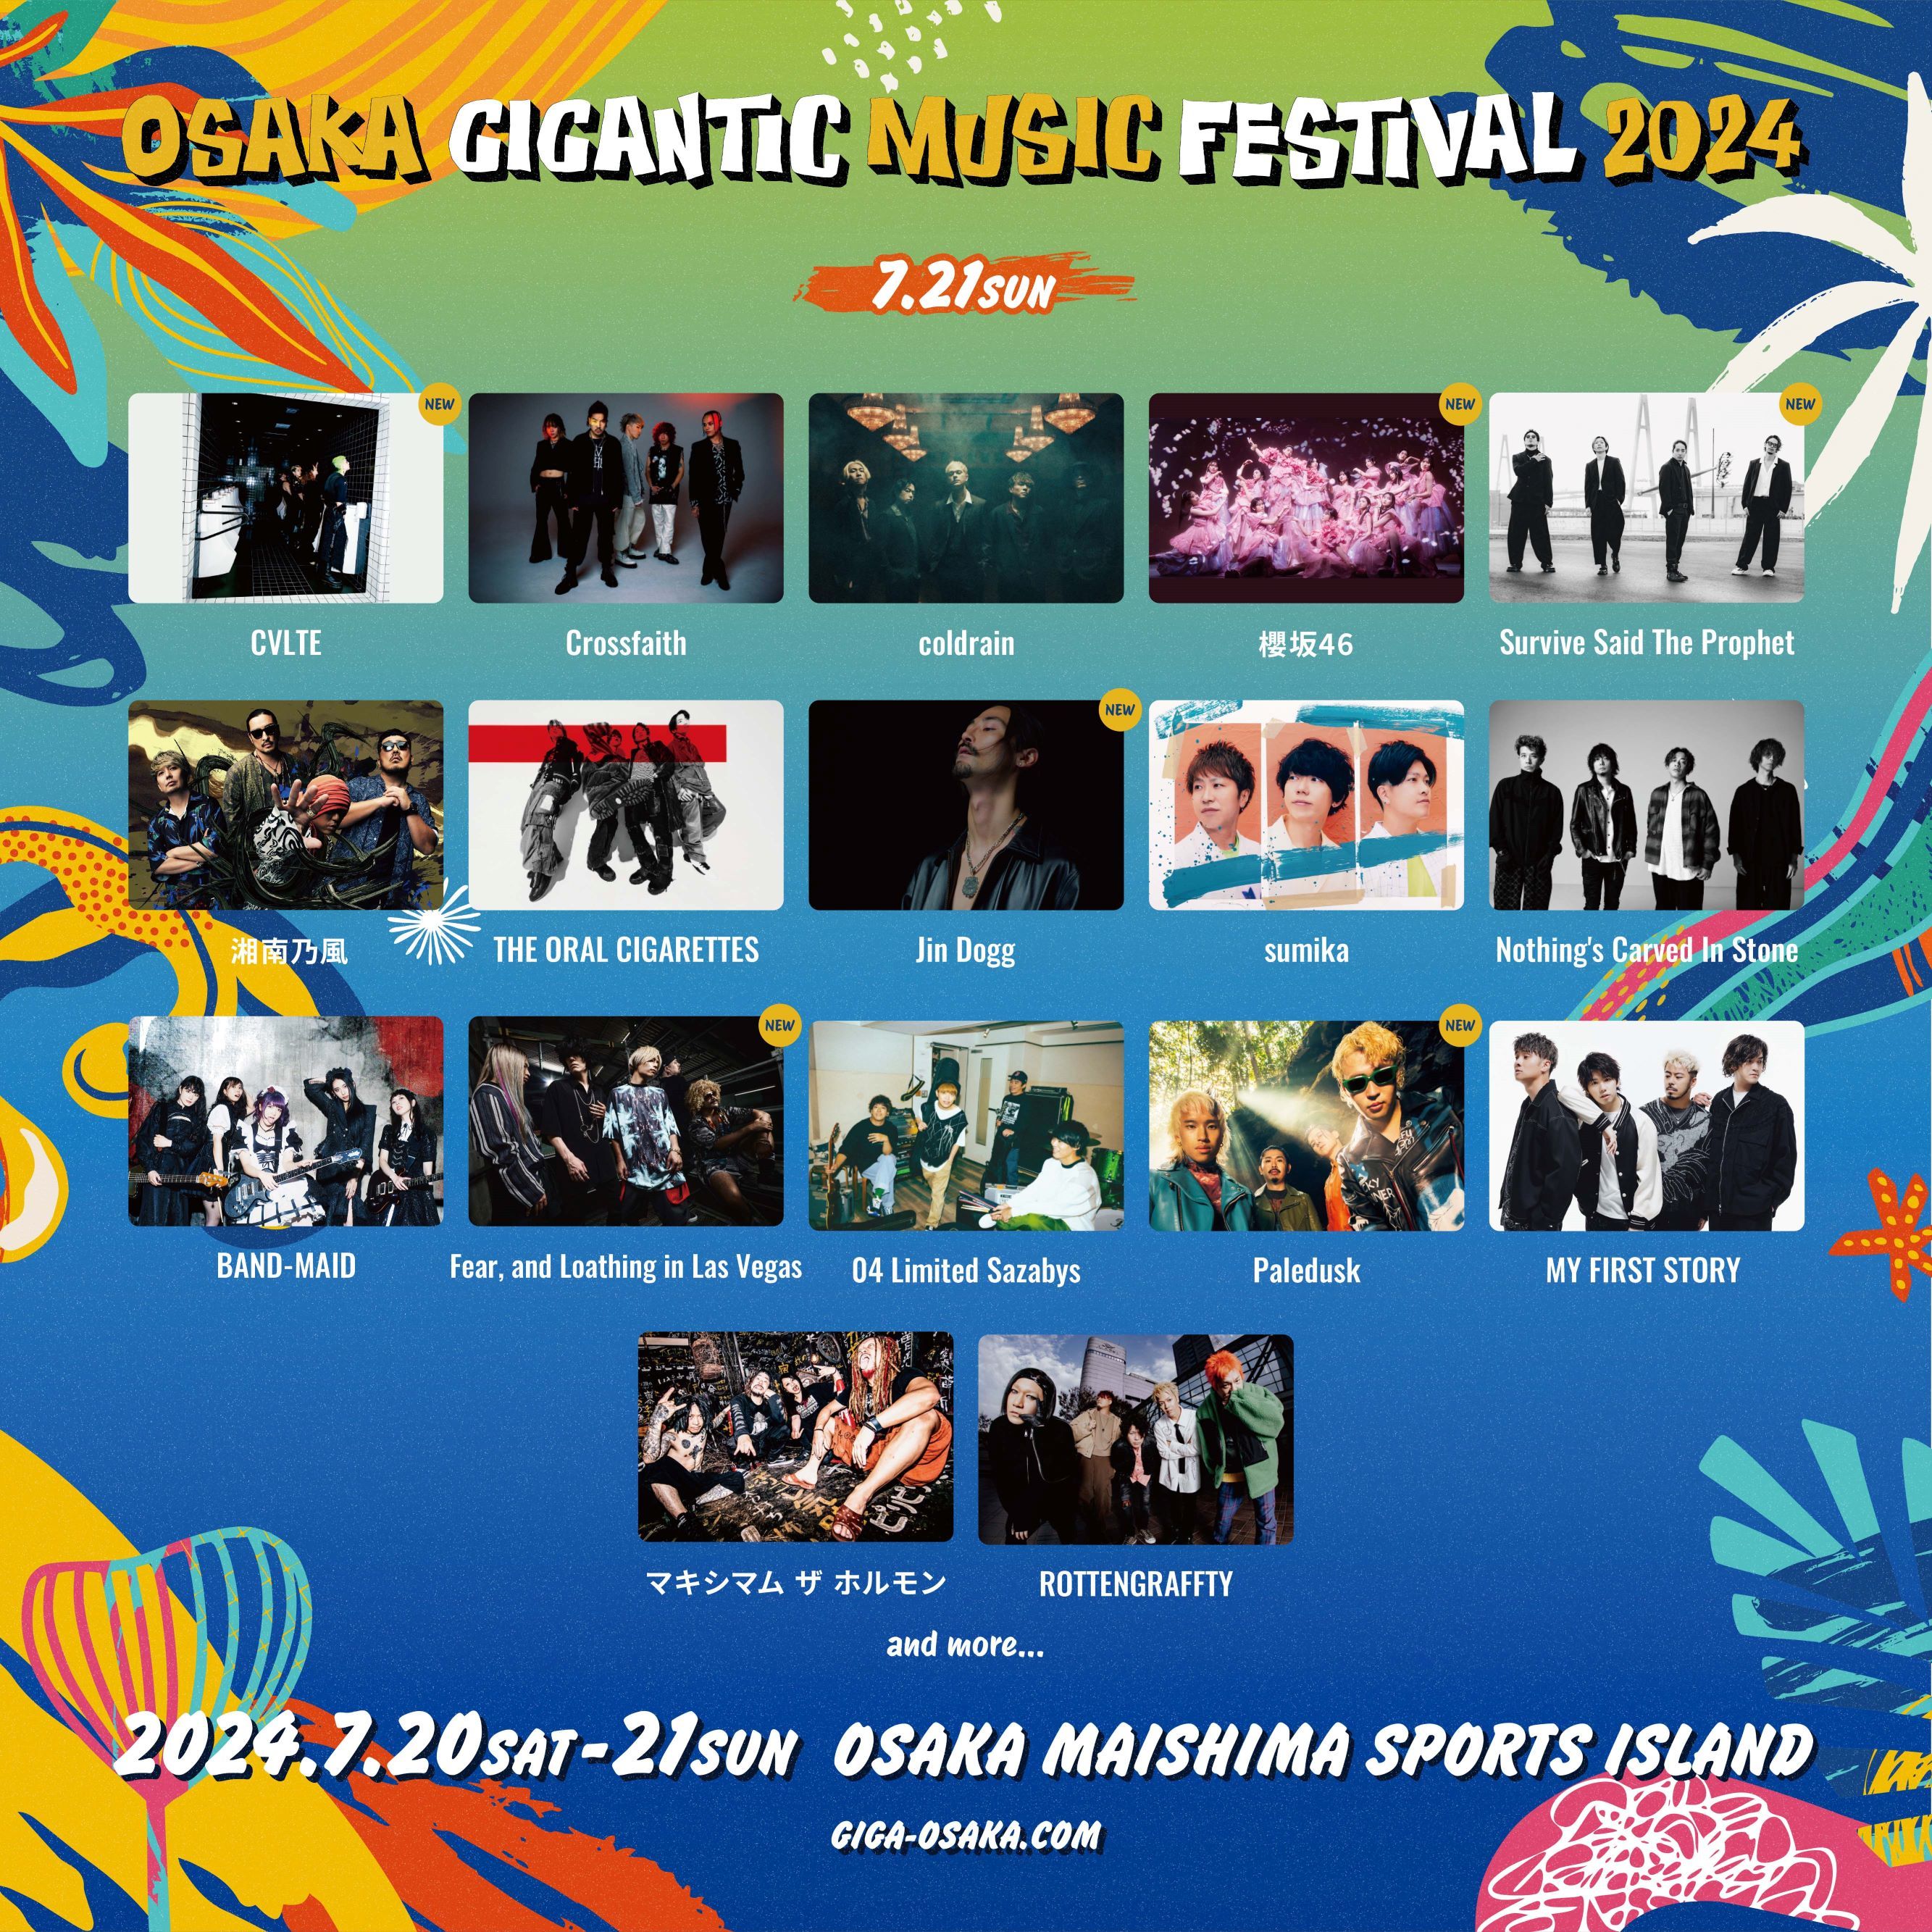 『OSAKA GIGANTIC MUSIC FESTIVAL 2024』